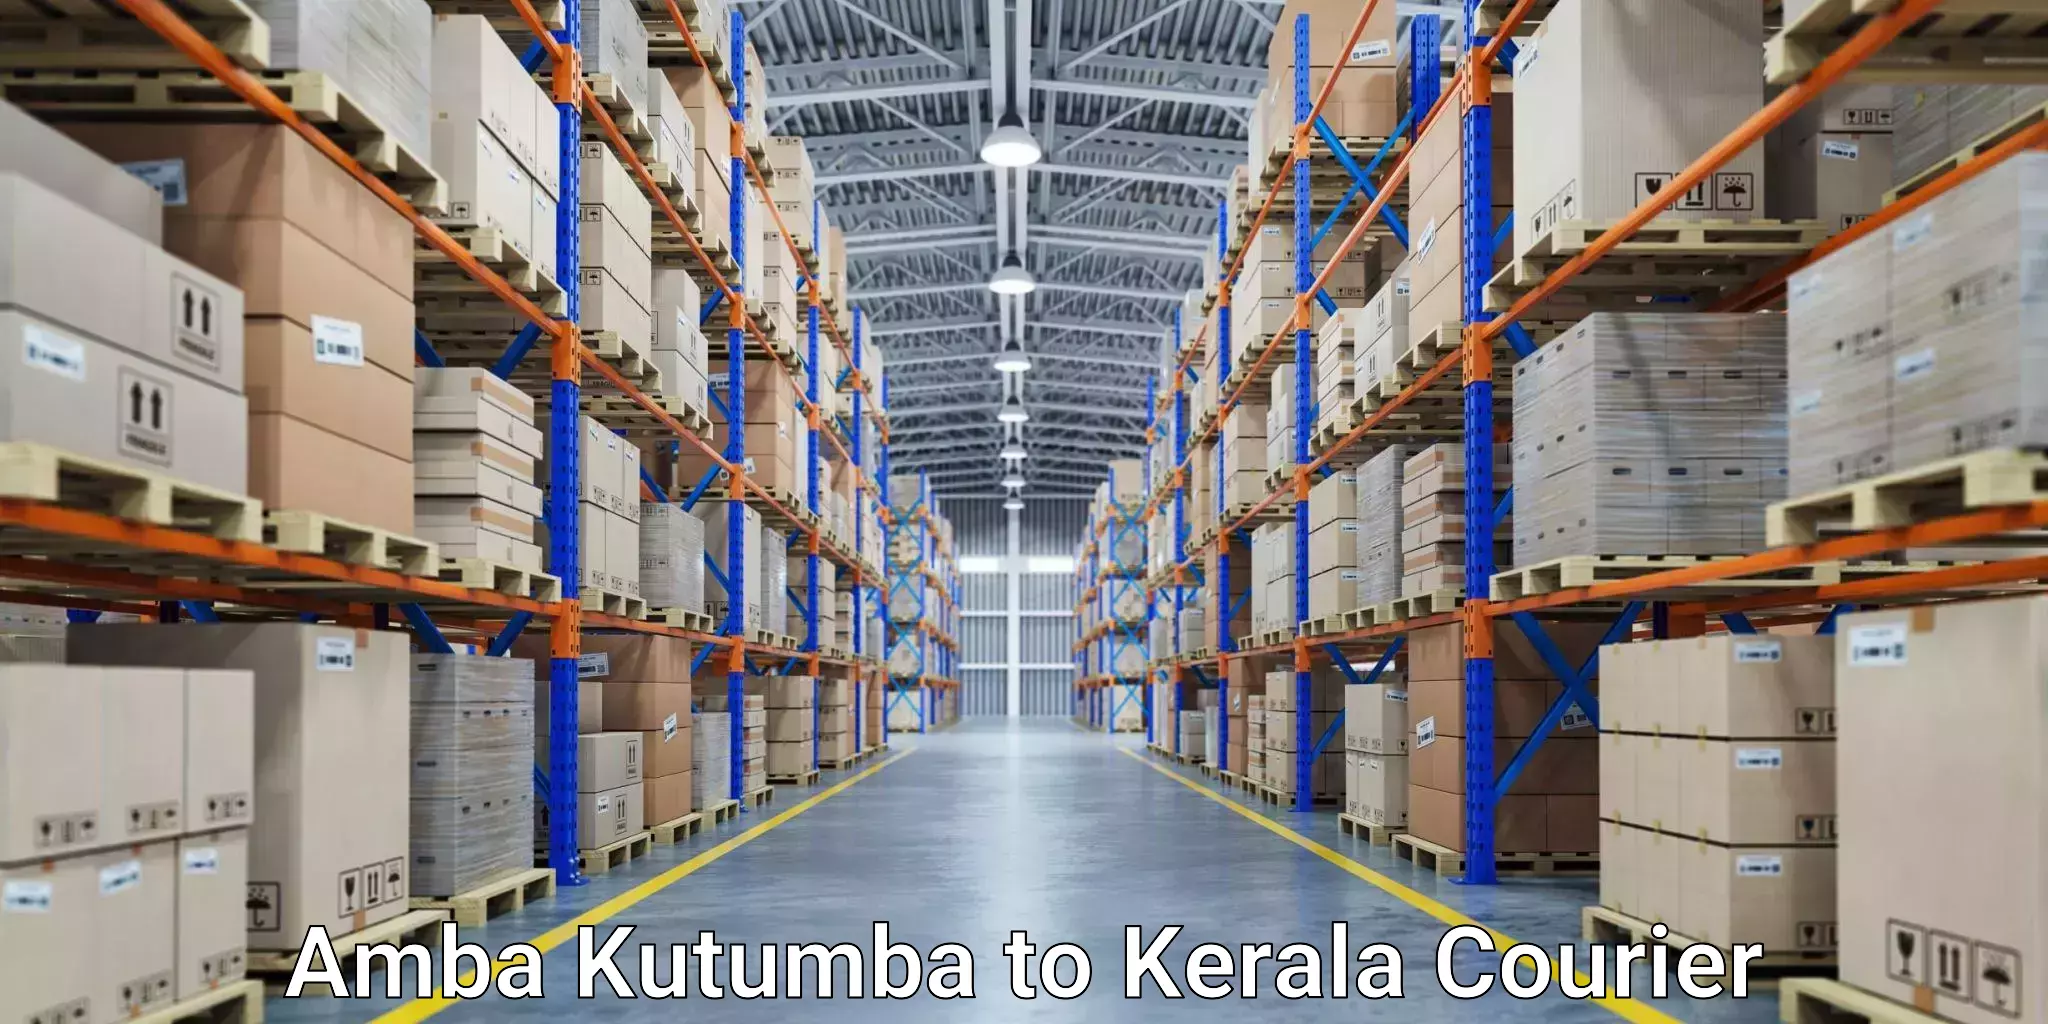 Advanced shipping services Amba Kutumba to Cochin Port Kochi